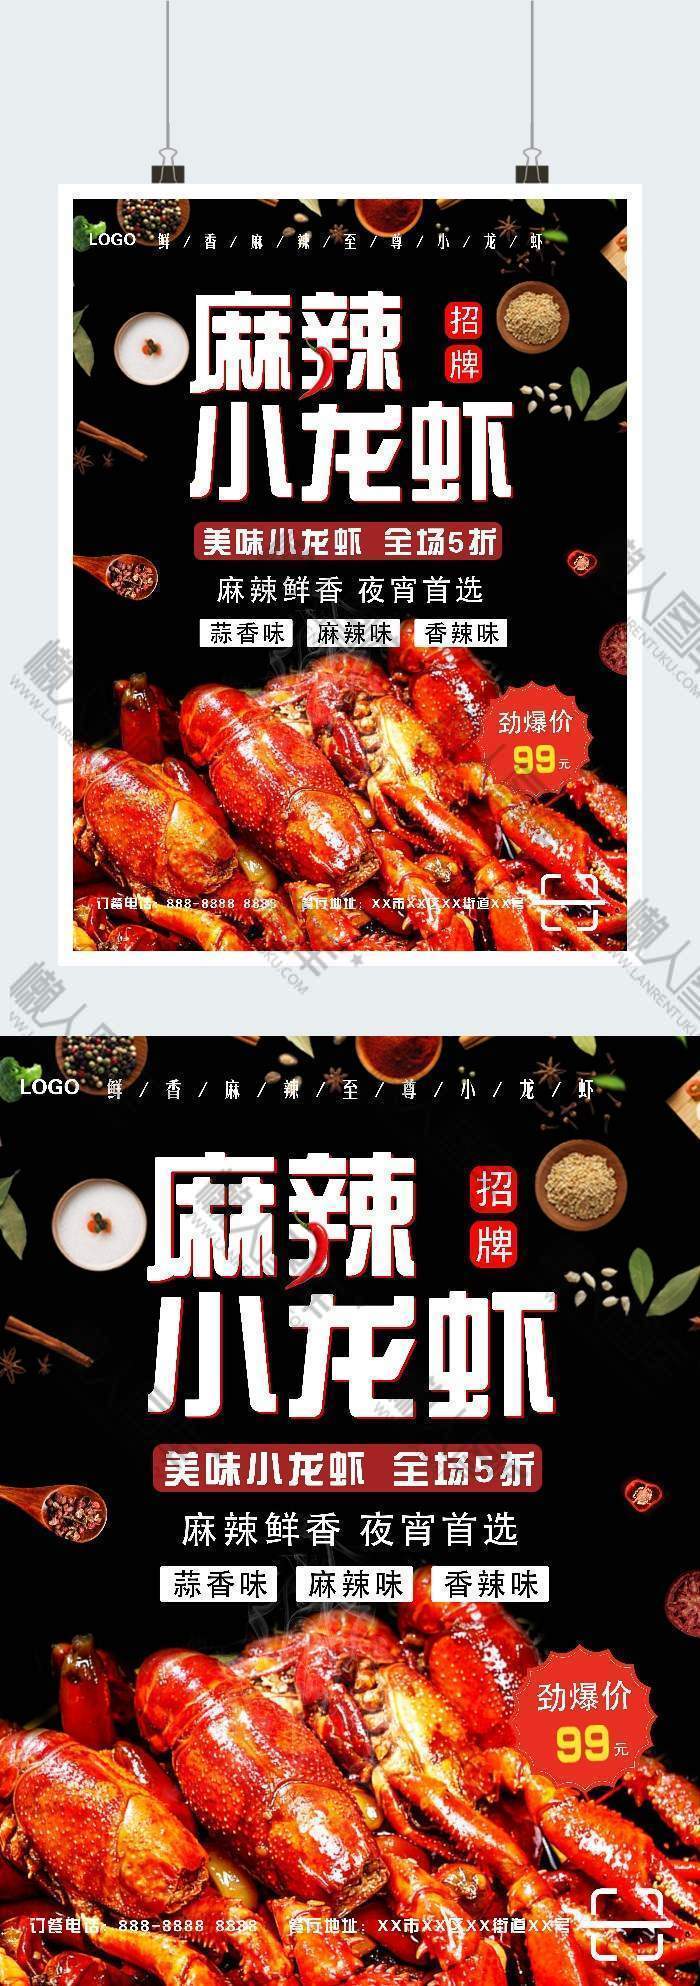 麻辣小龙虾活动促销广告平面海报